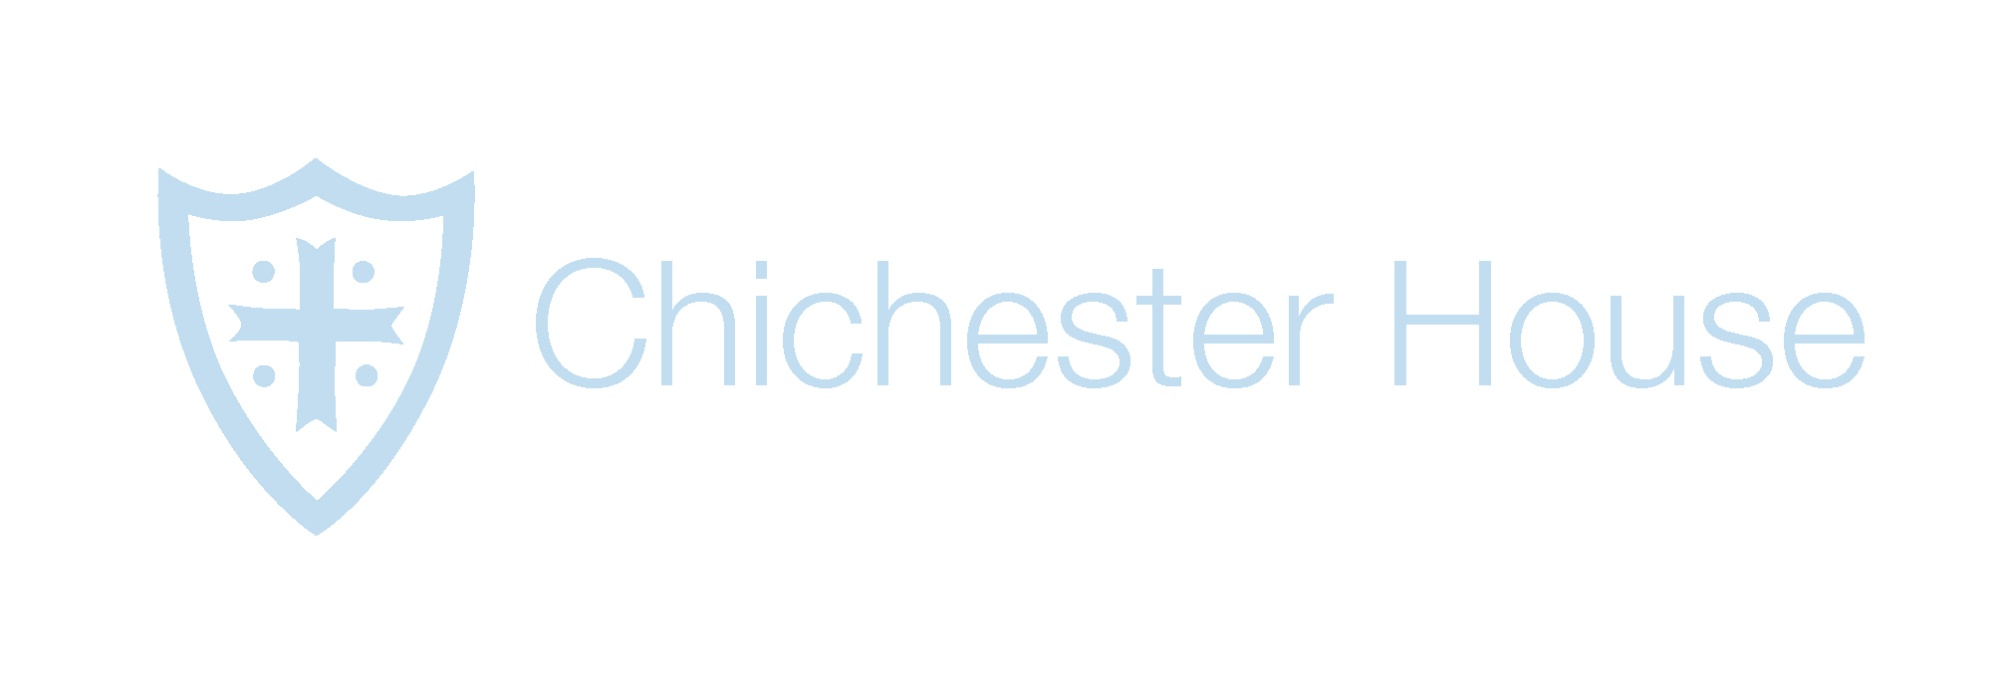 Chichester Logo 